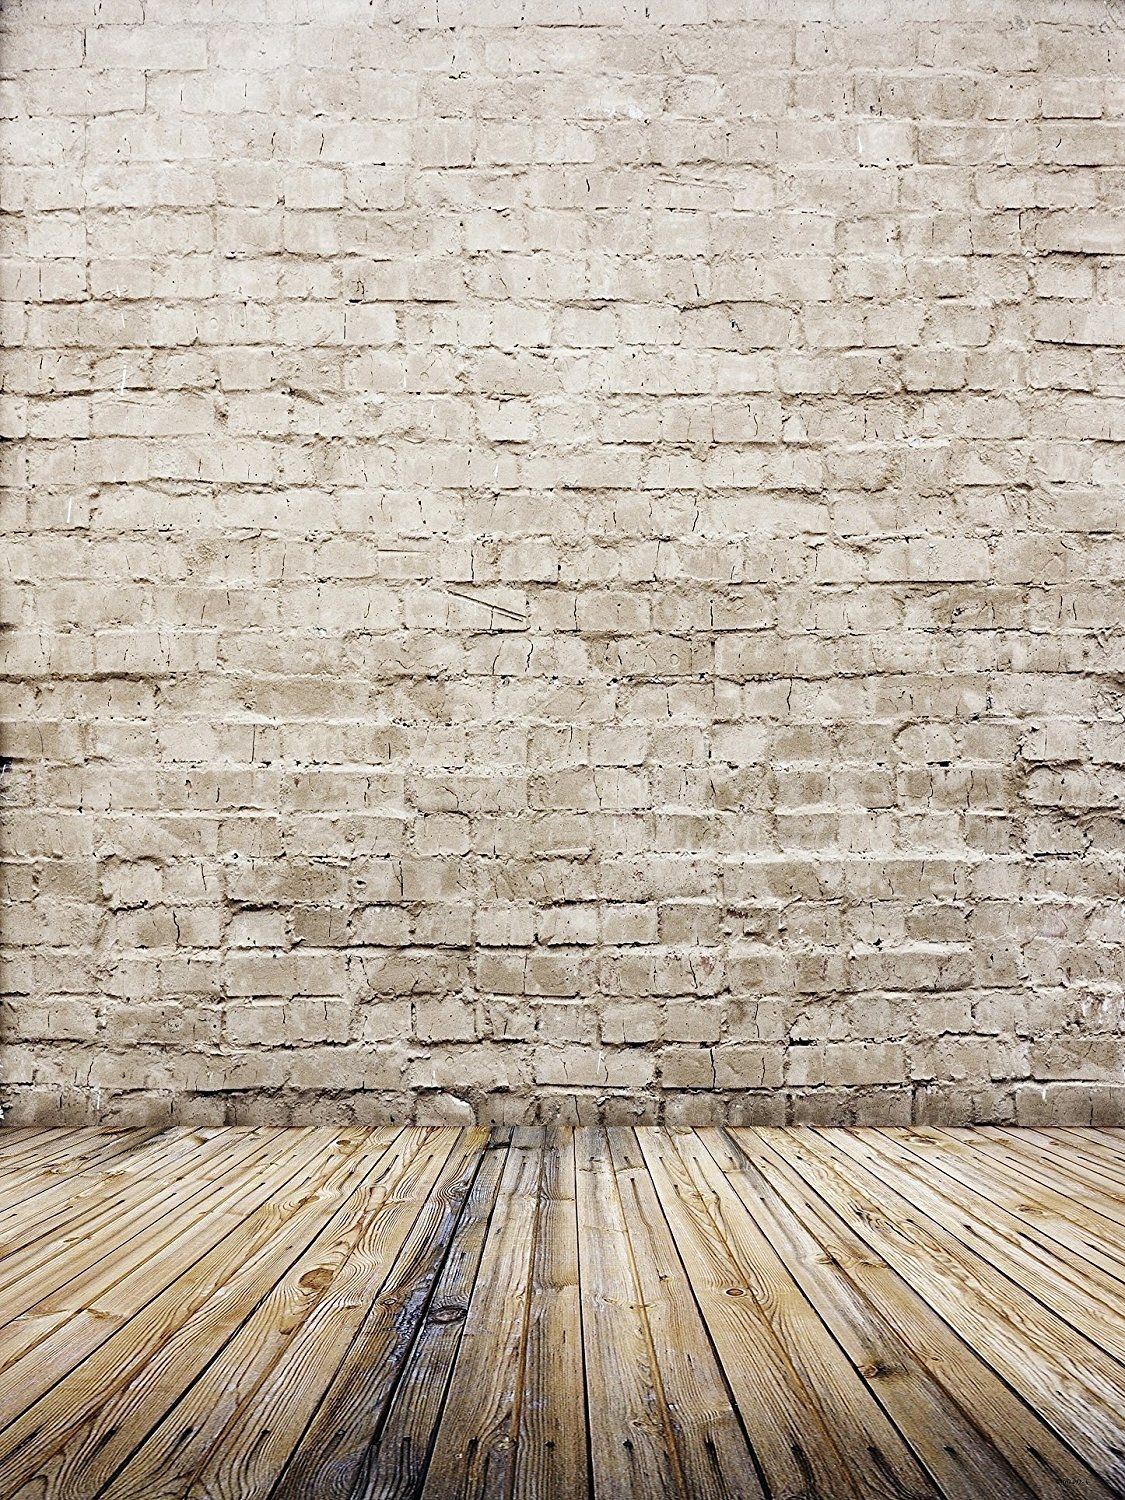 Bricks aesthetic Wallpaper Download